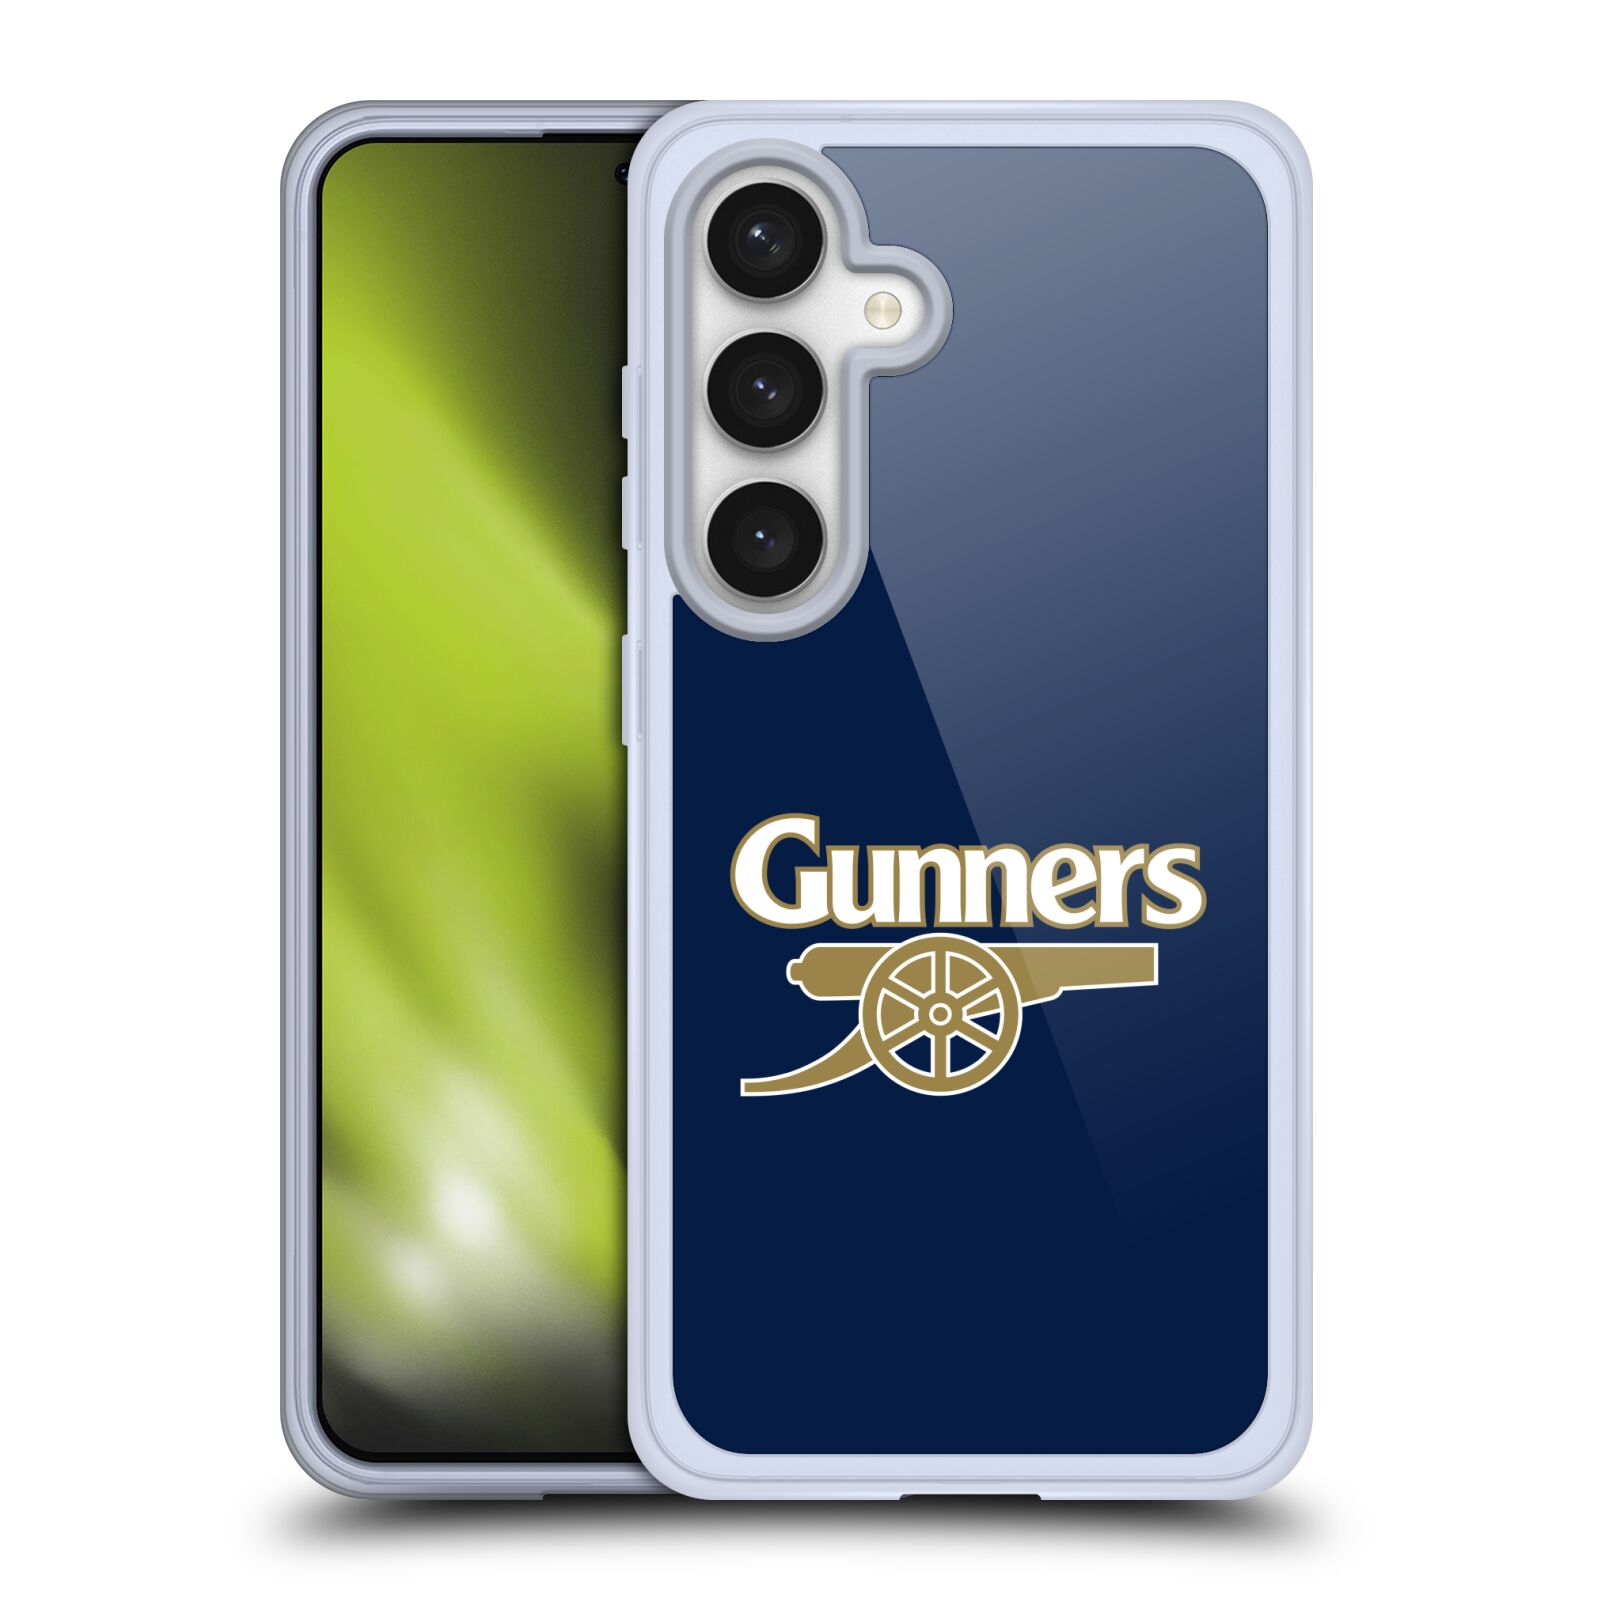 Silikonové lesklé pouzdro na mobil Samsung Galaxy S24 - Head Case - Arsenal FC - Gunners (Silikonový kryt, obal, pouzdro na mobilní telefon s motivem klubu Arsenal FC - Gunners pro Samsung Galaxy S24)